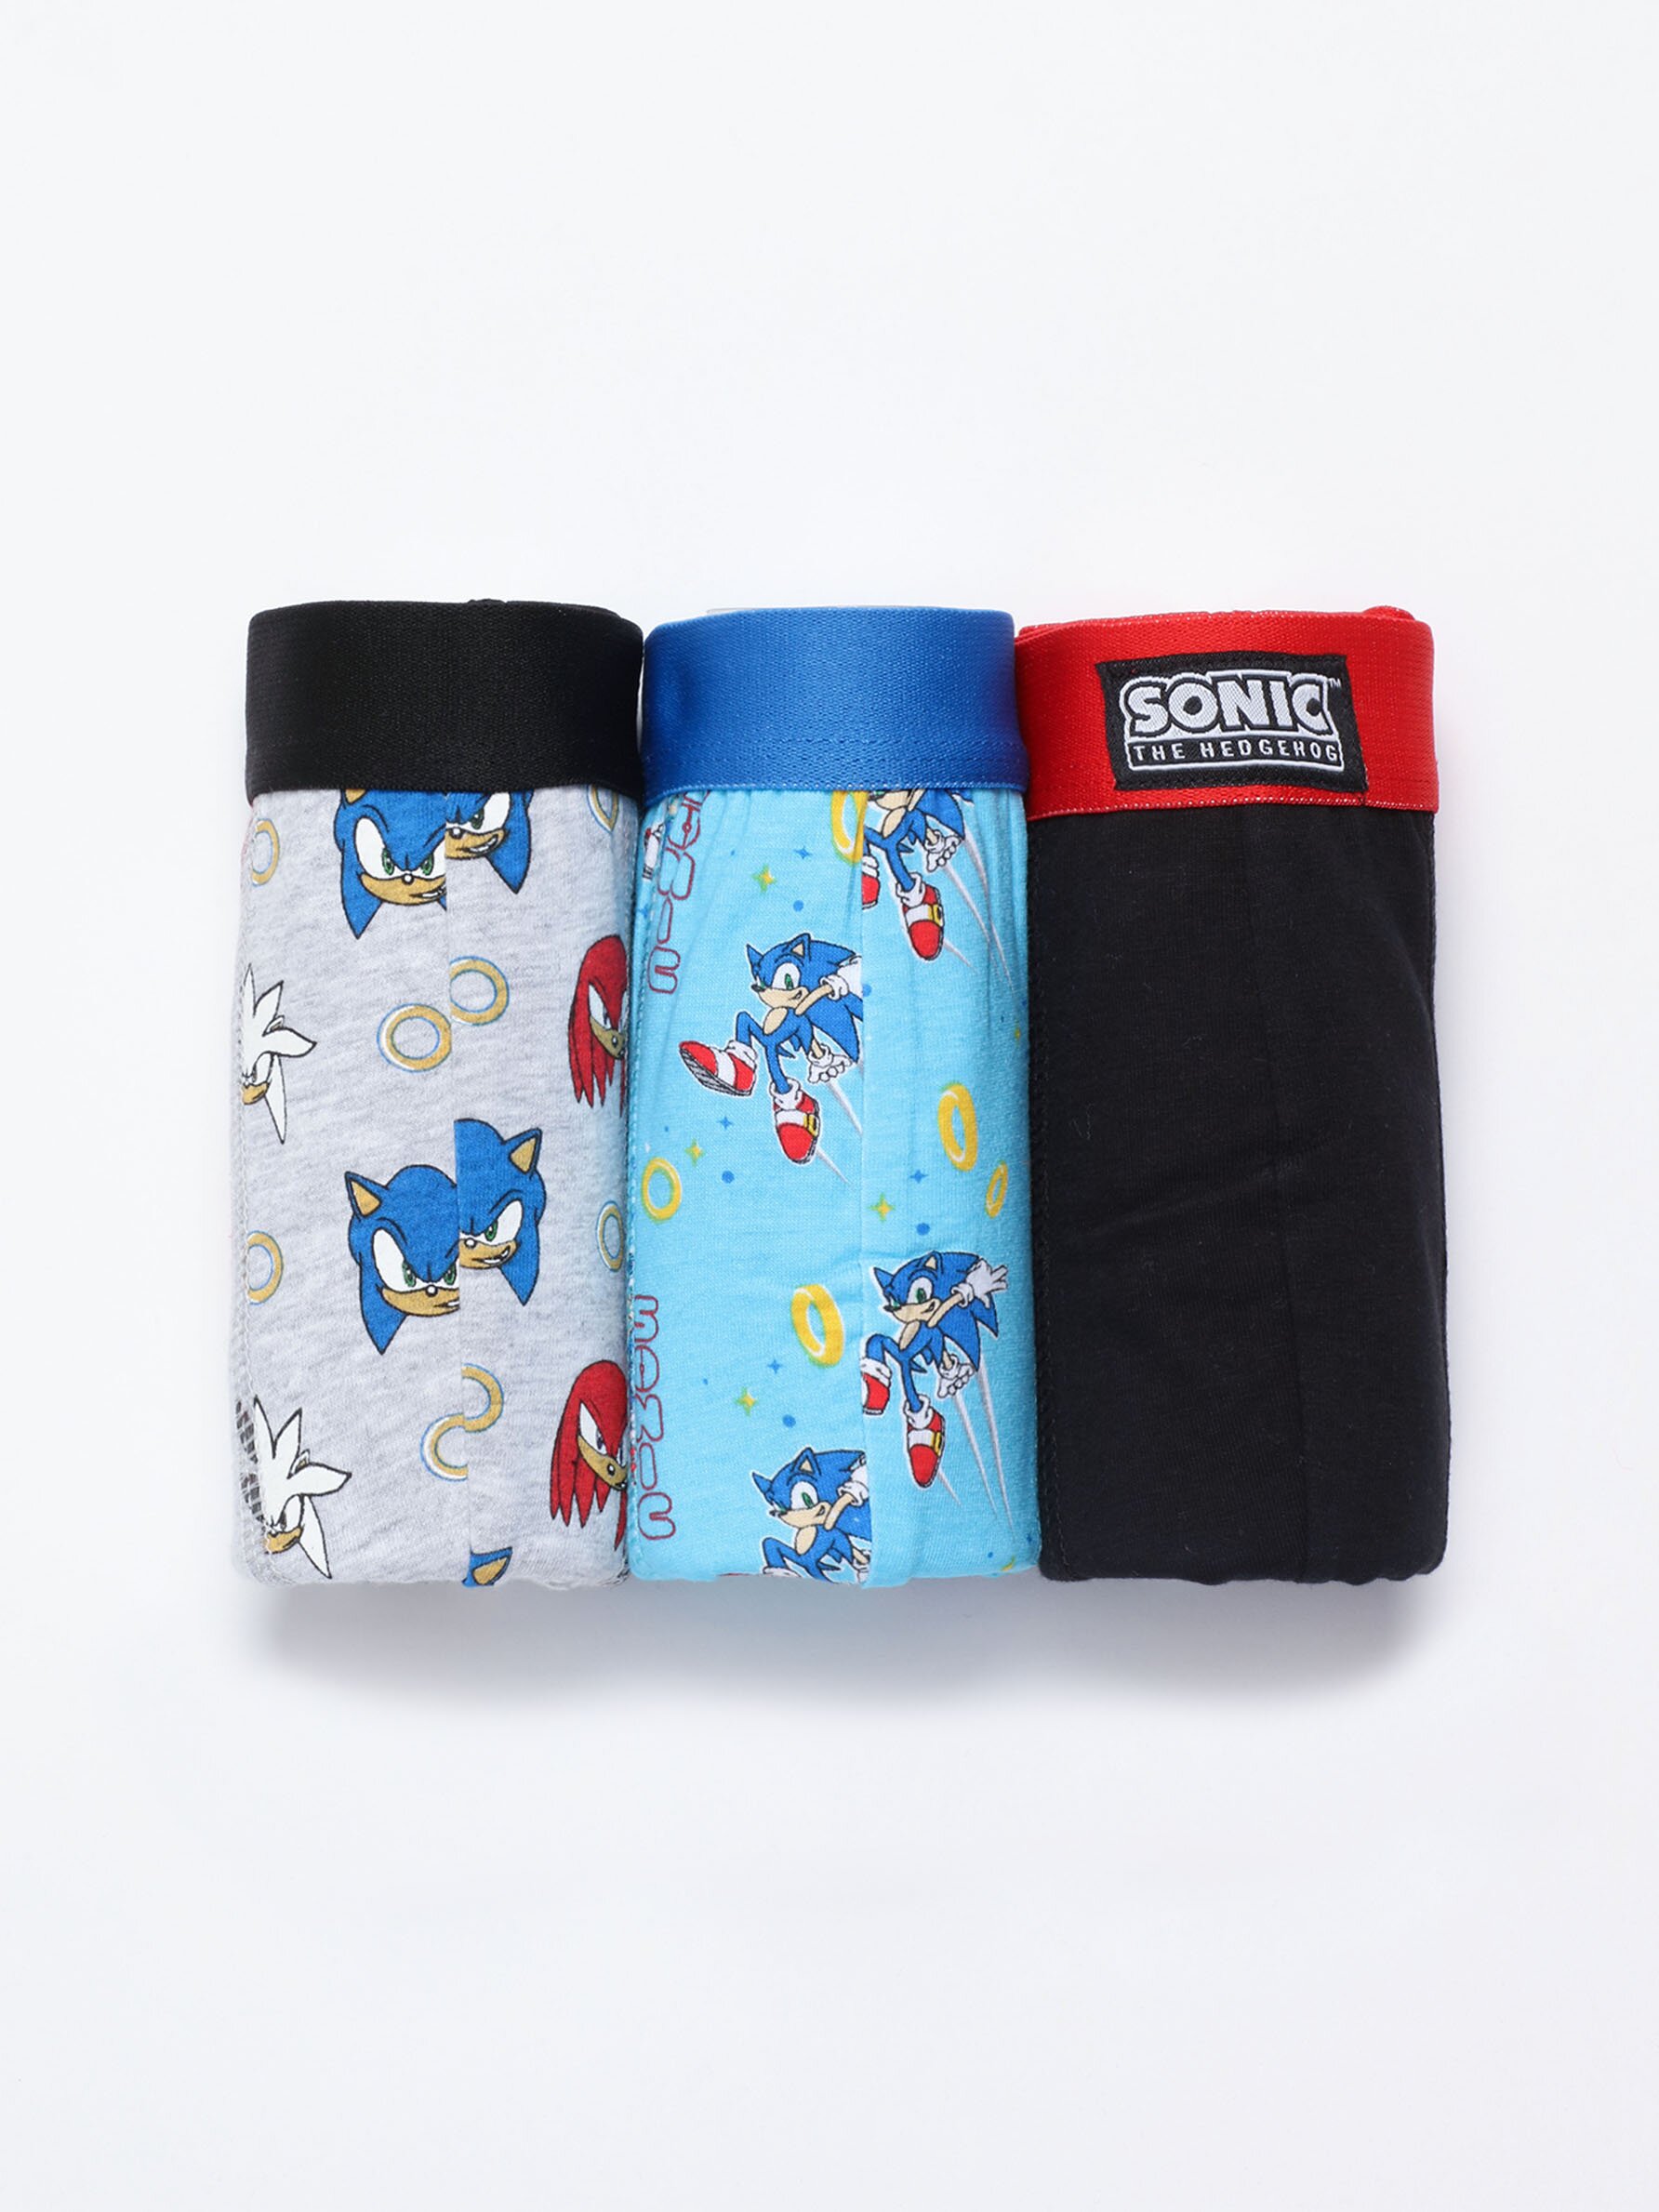 Pack of 3 pairs of SONIC ™, SEGA boxers - 